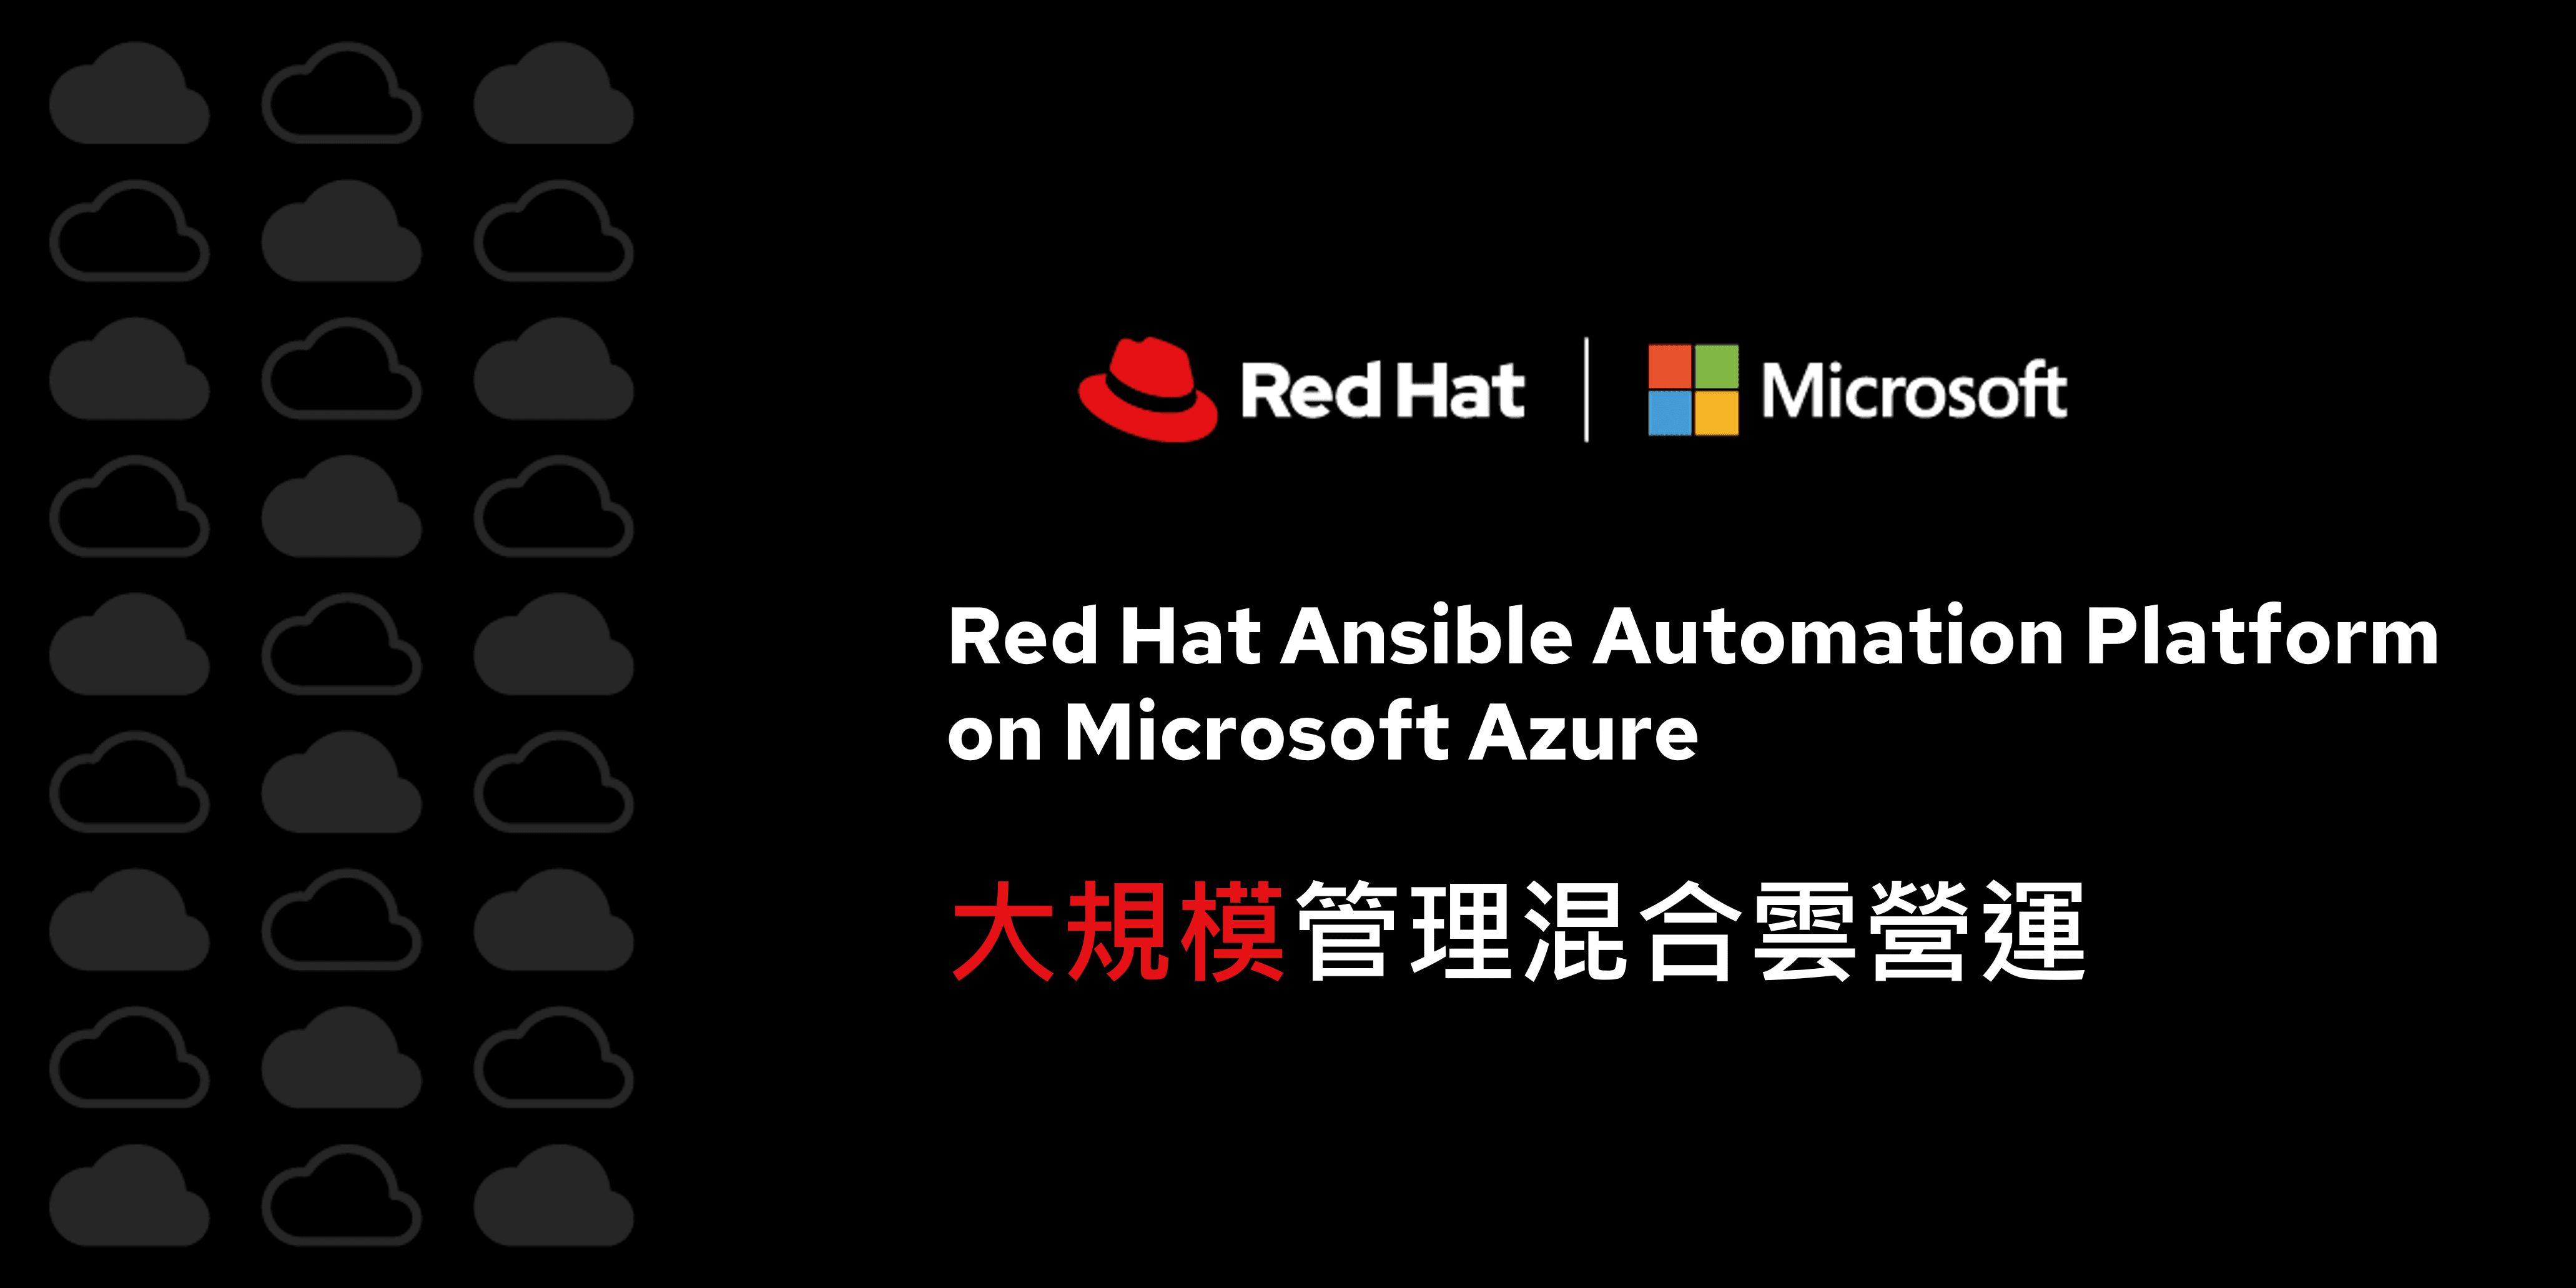 Red Hat 與微軟聯手助企業延伸自動化工作流程 加速擴展雲端服務